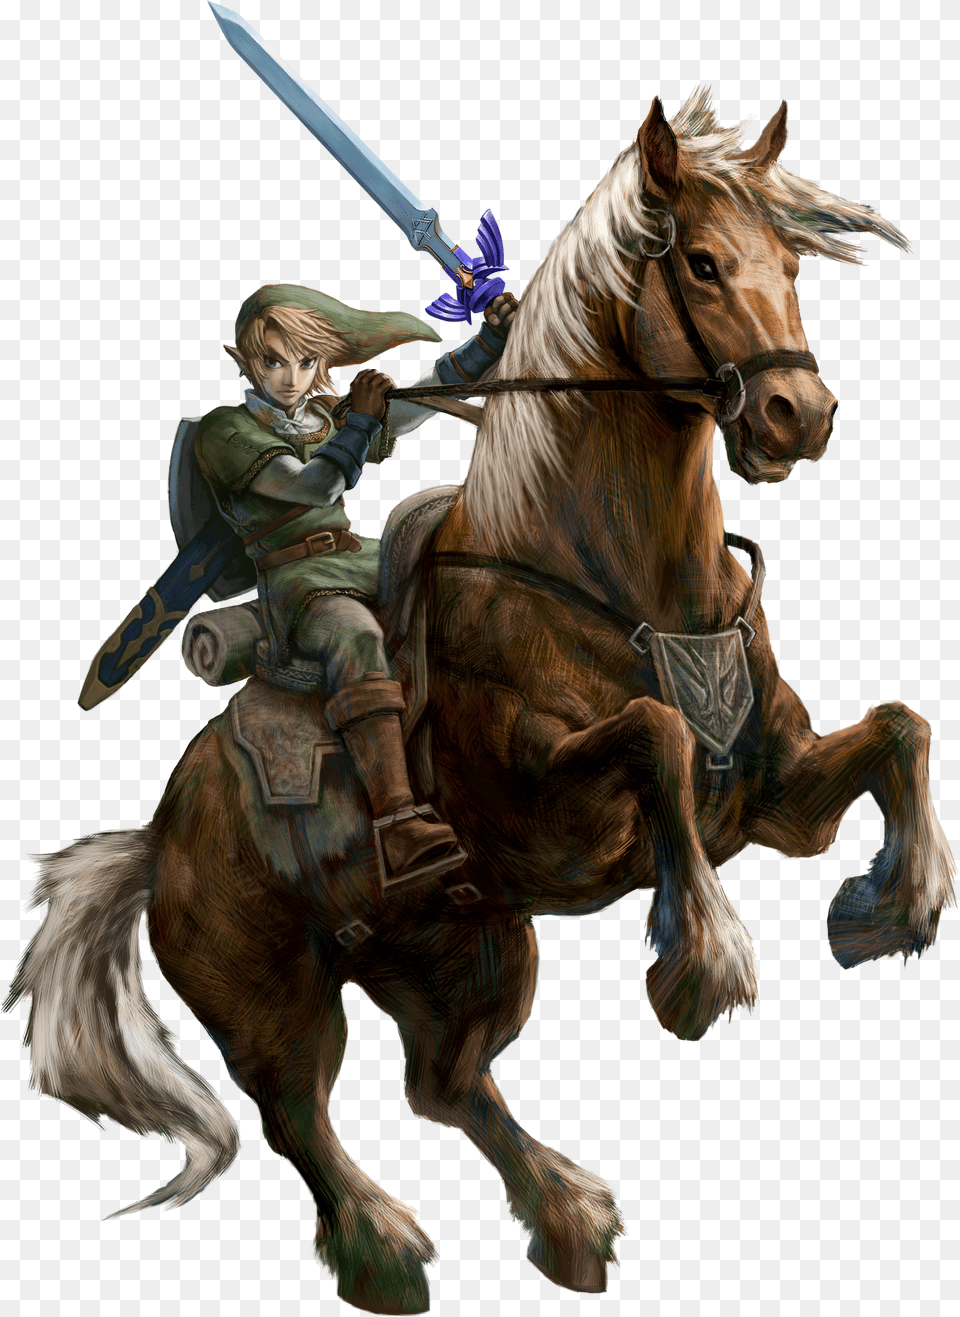 The Legend Of Zelda Images Link Hd Wallpaper And Background Legend Of Zelda Twilight Princess Epona Free Png Download